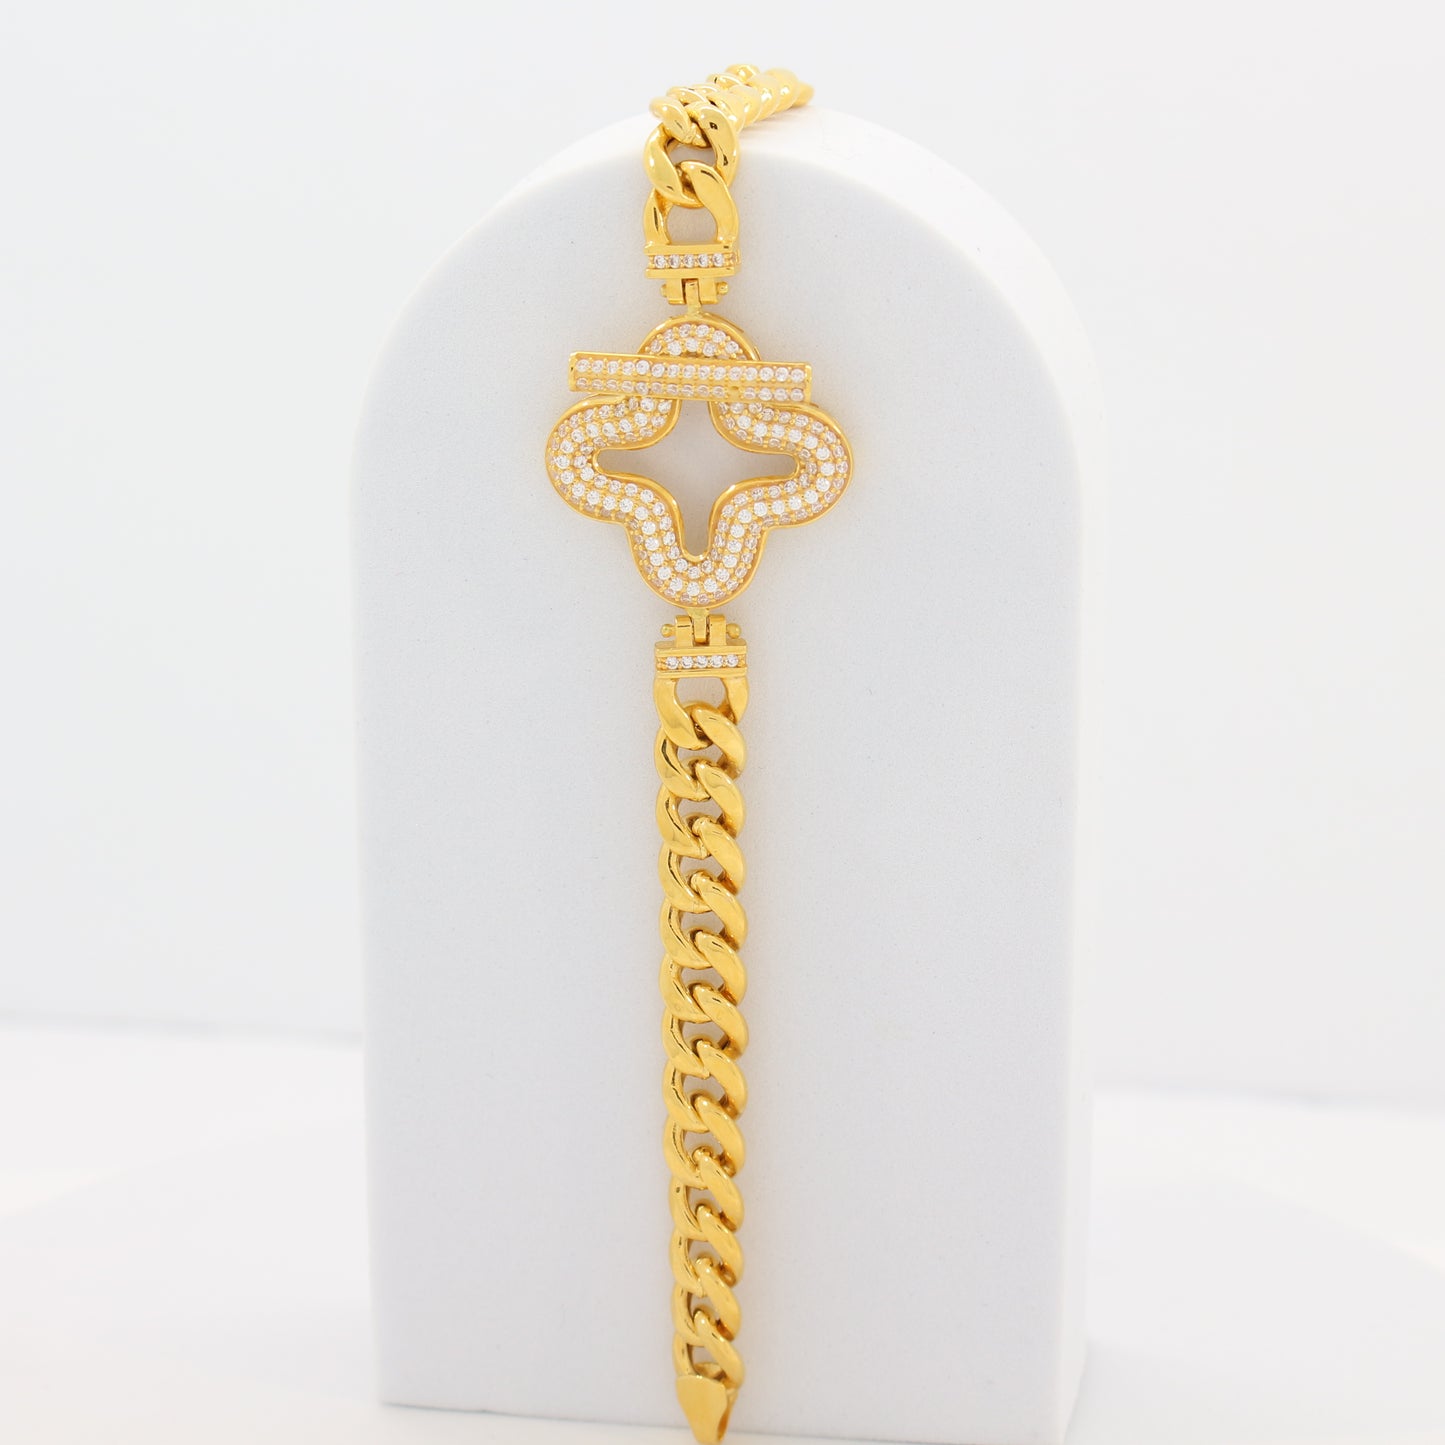 21K Gold Chain Bracelet